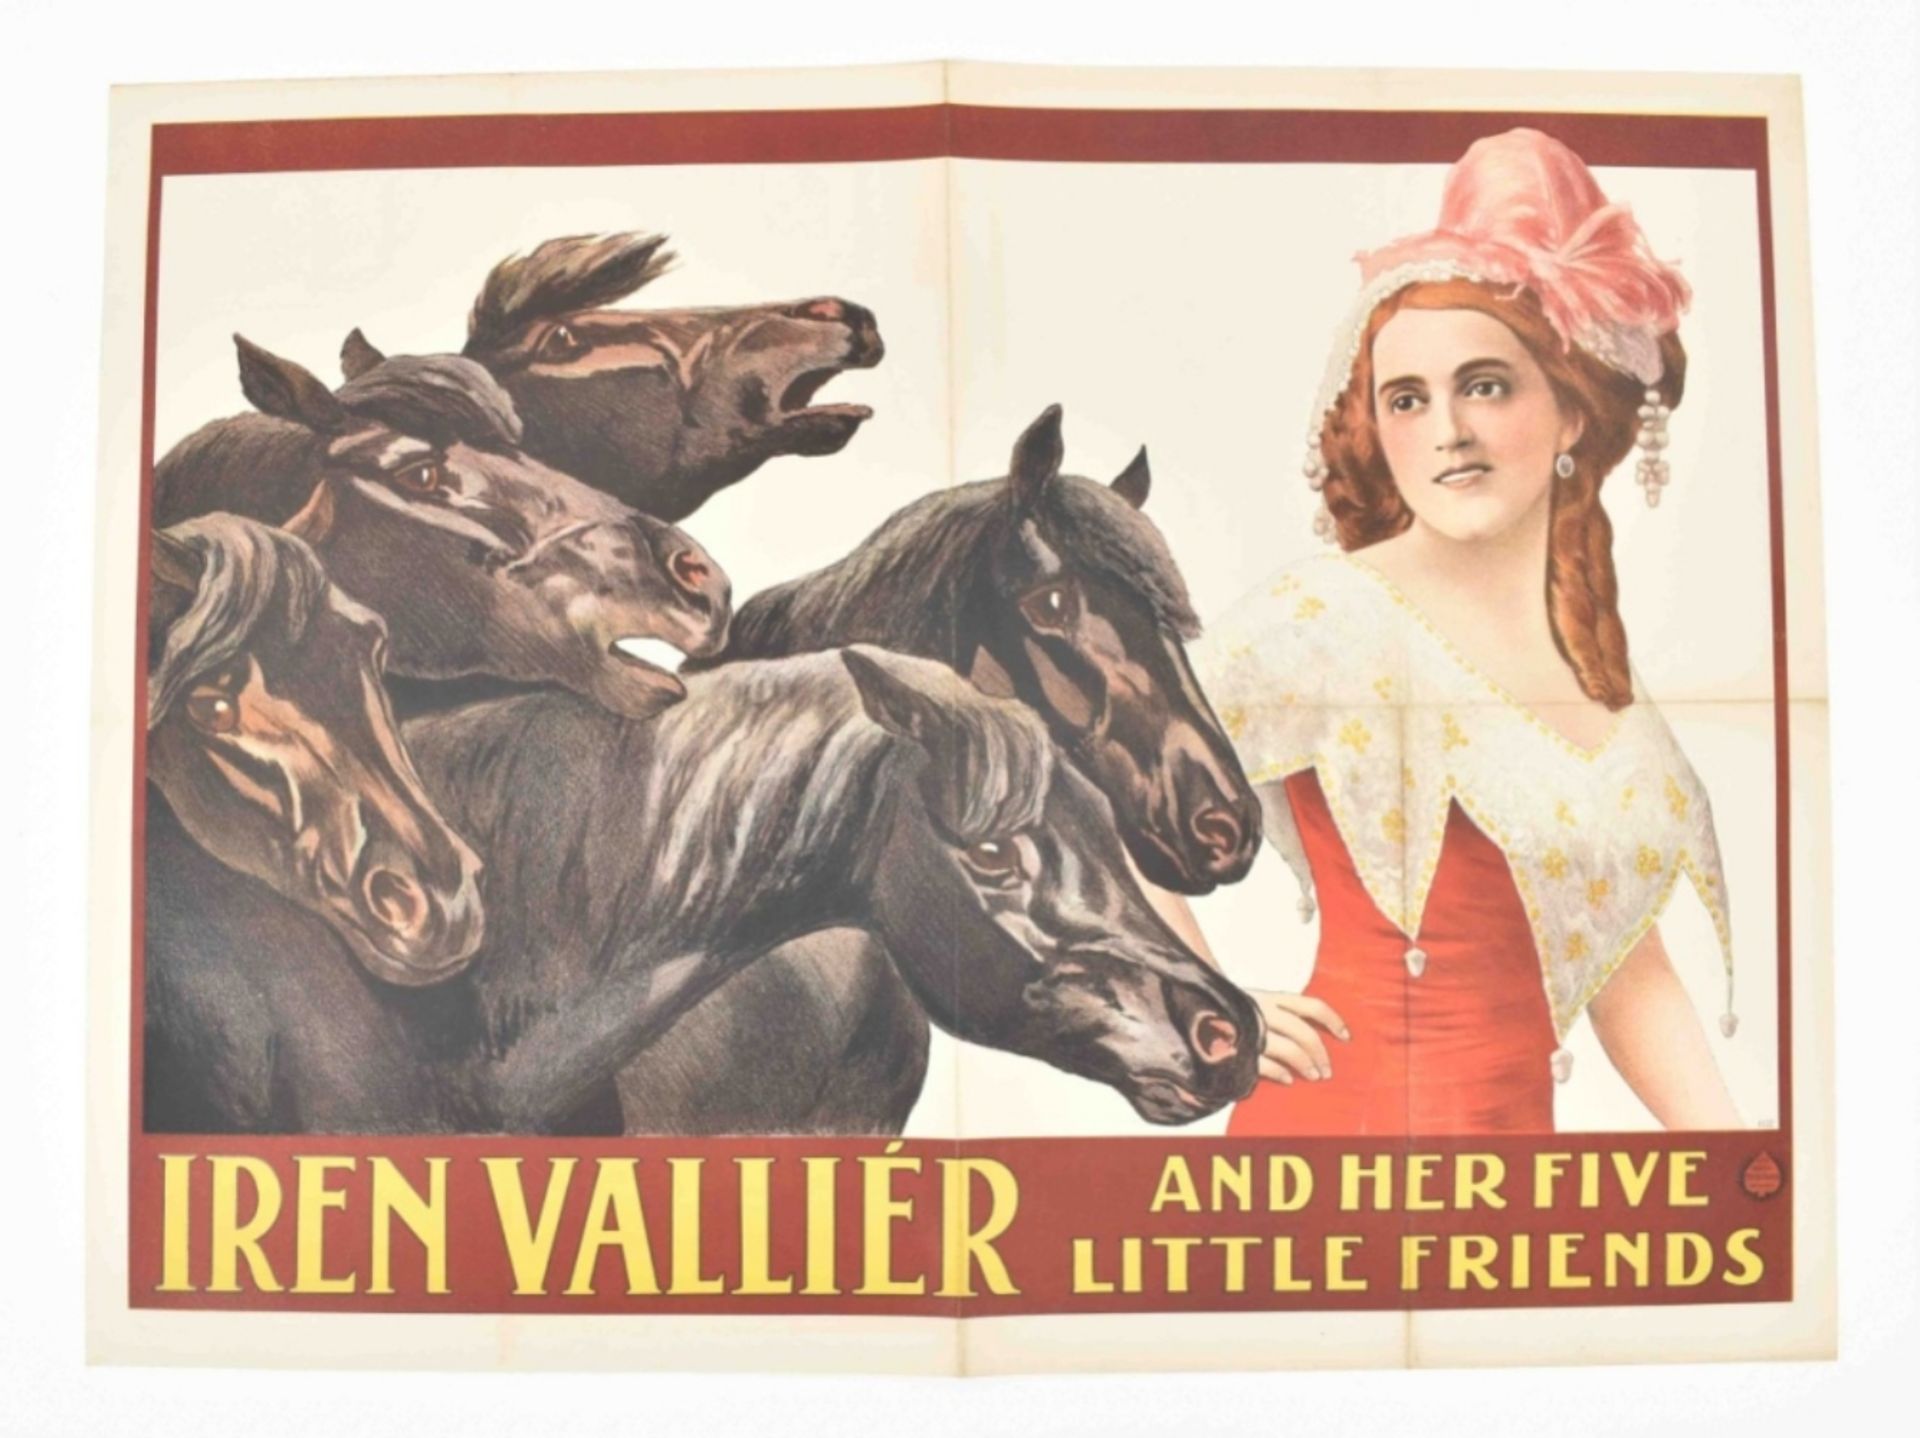 [Animal Dressage] [Horses] Iren Vallier and her five little friends Friedländer, Hamburg, 1913